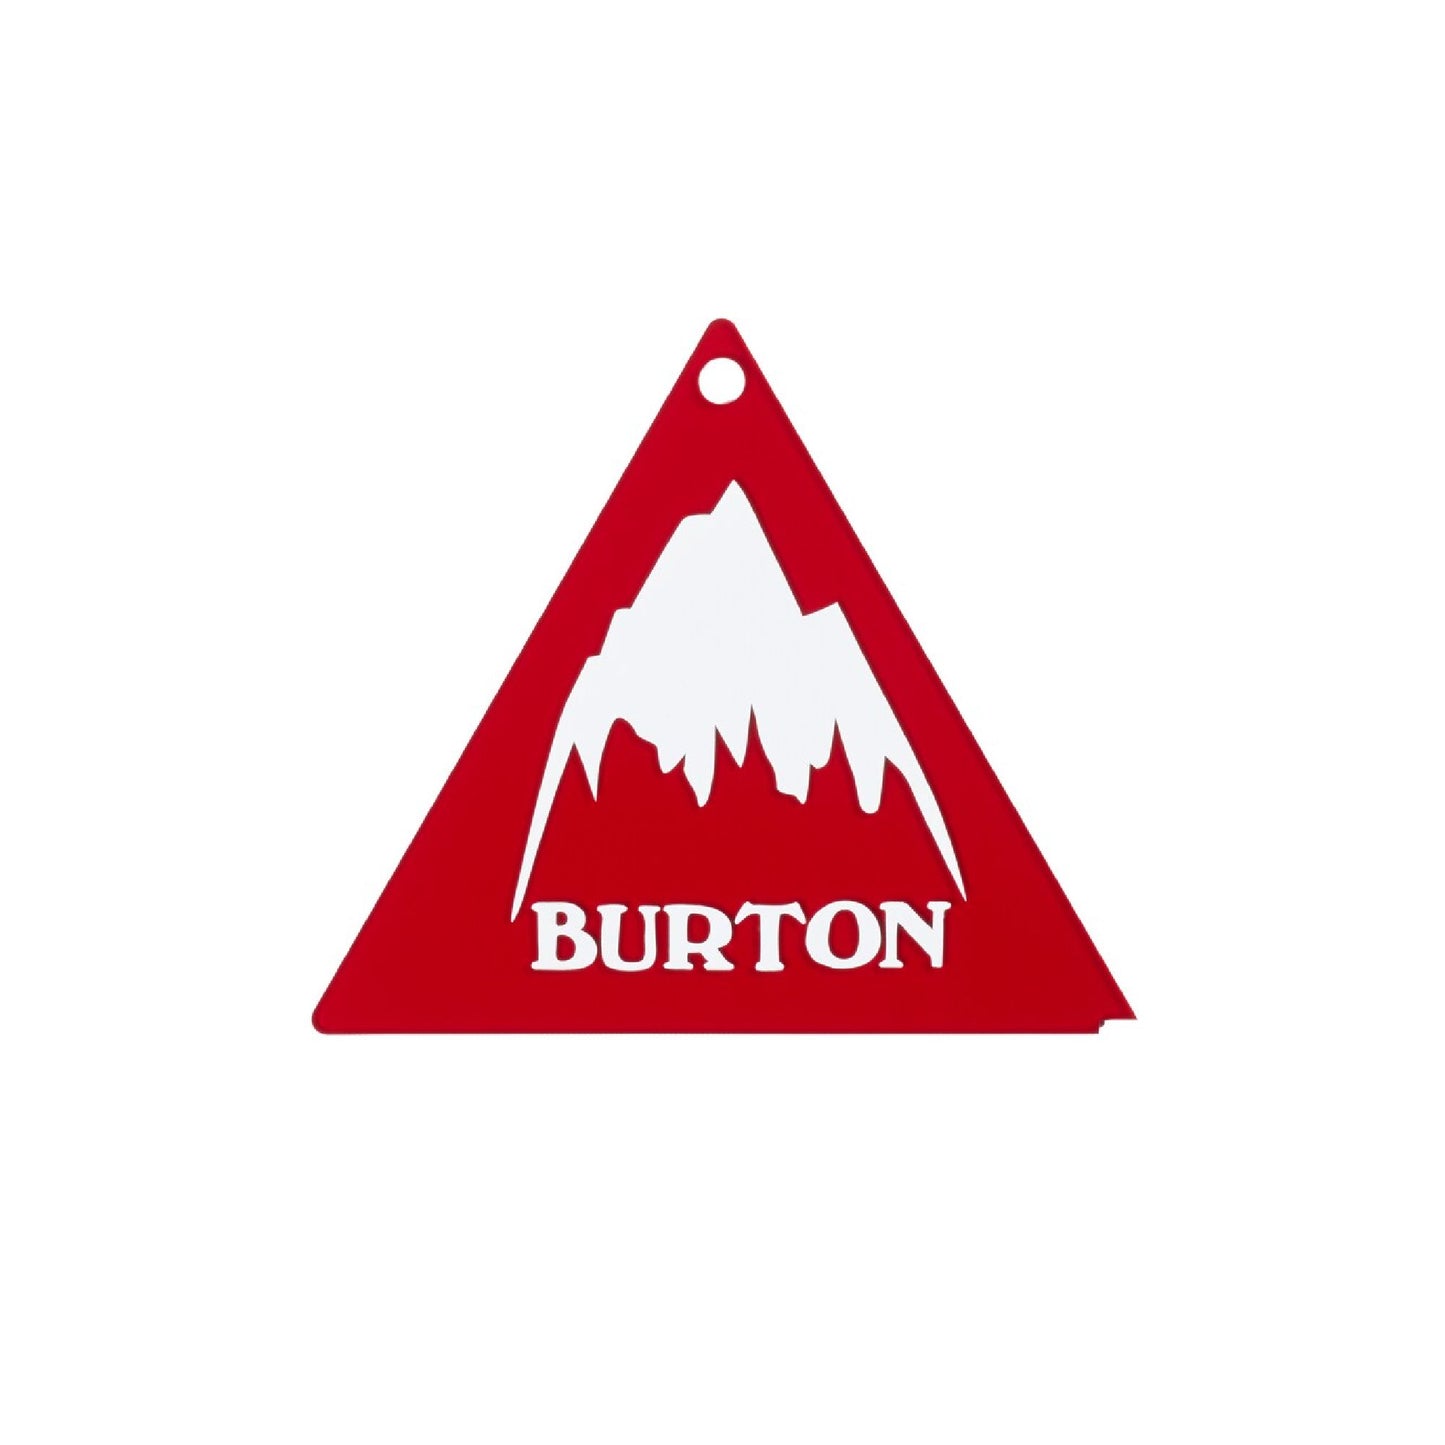 Burton Tri-Scraper - Burton Tuning